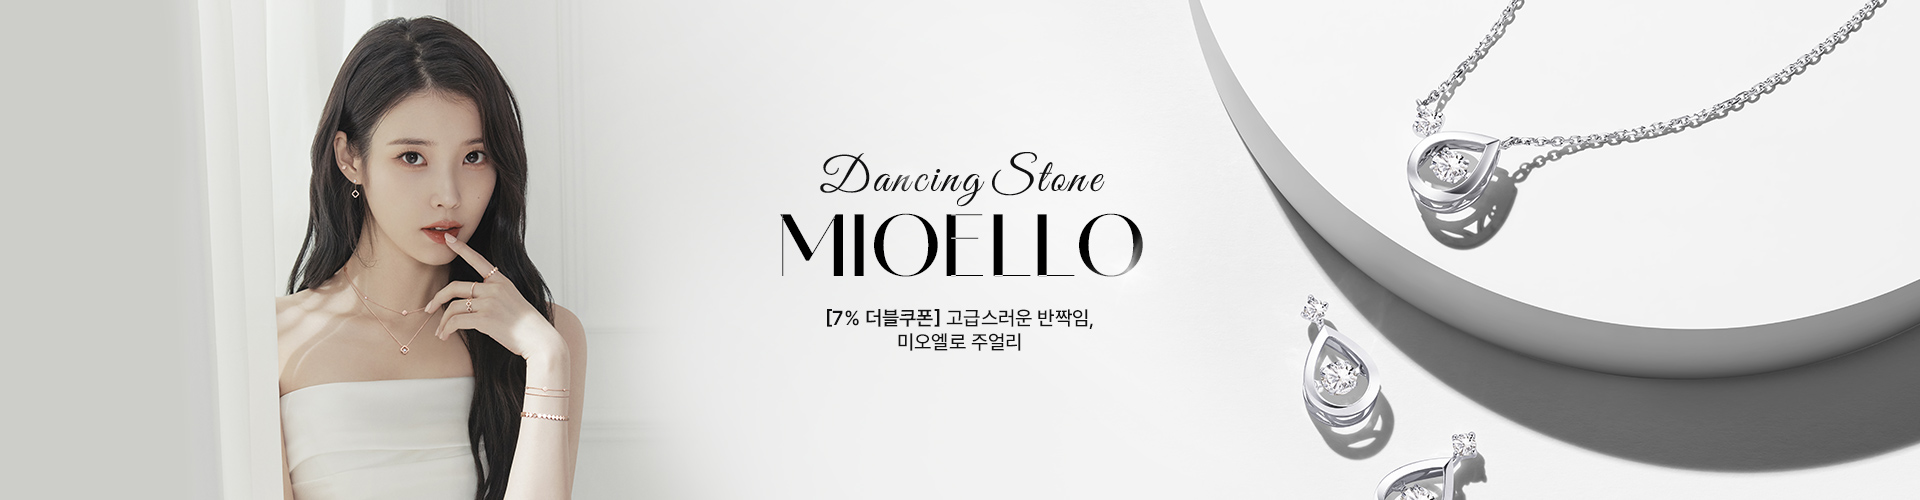 [주] DANCING STONE, MIOELLO